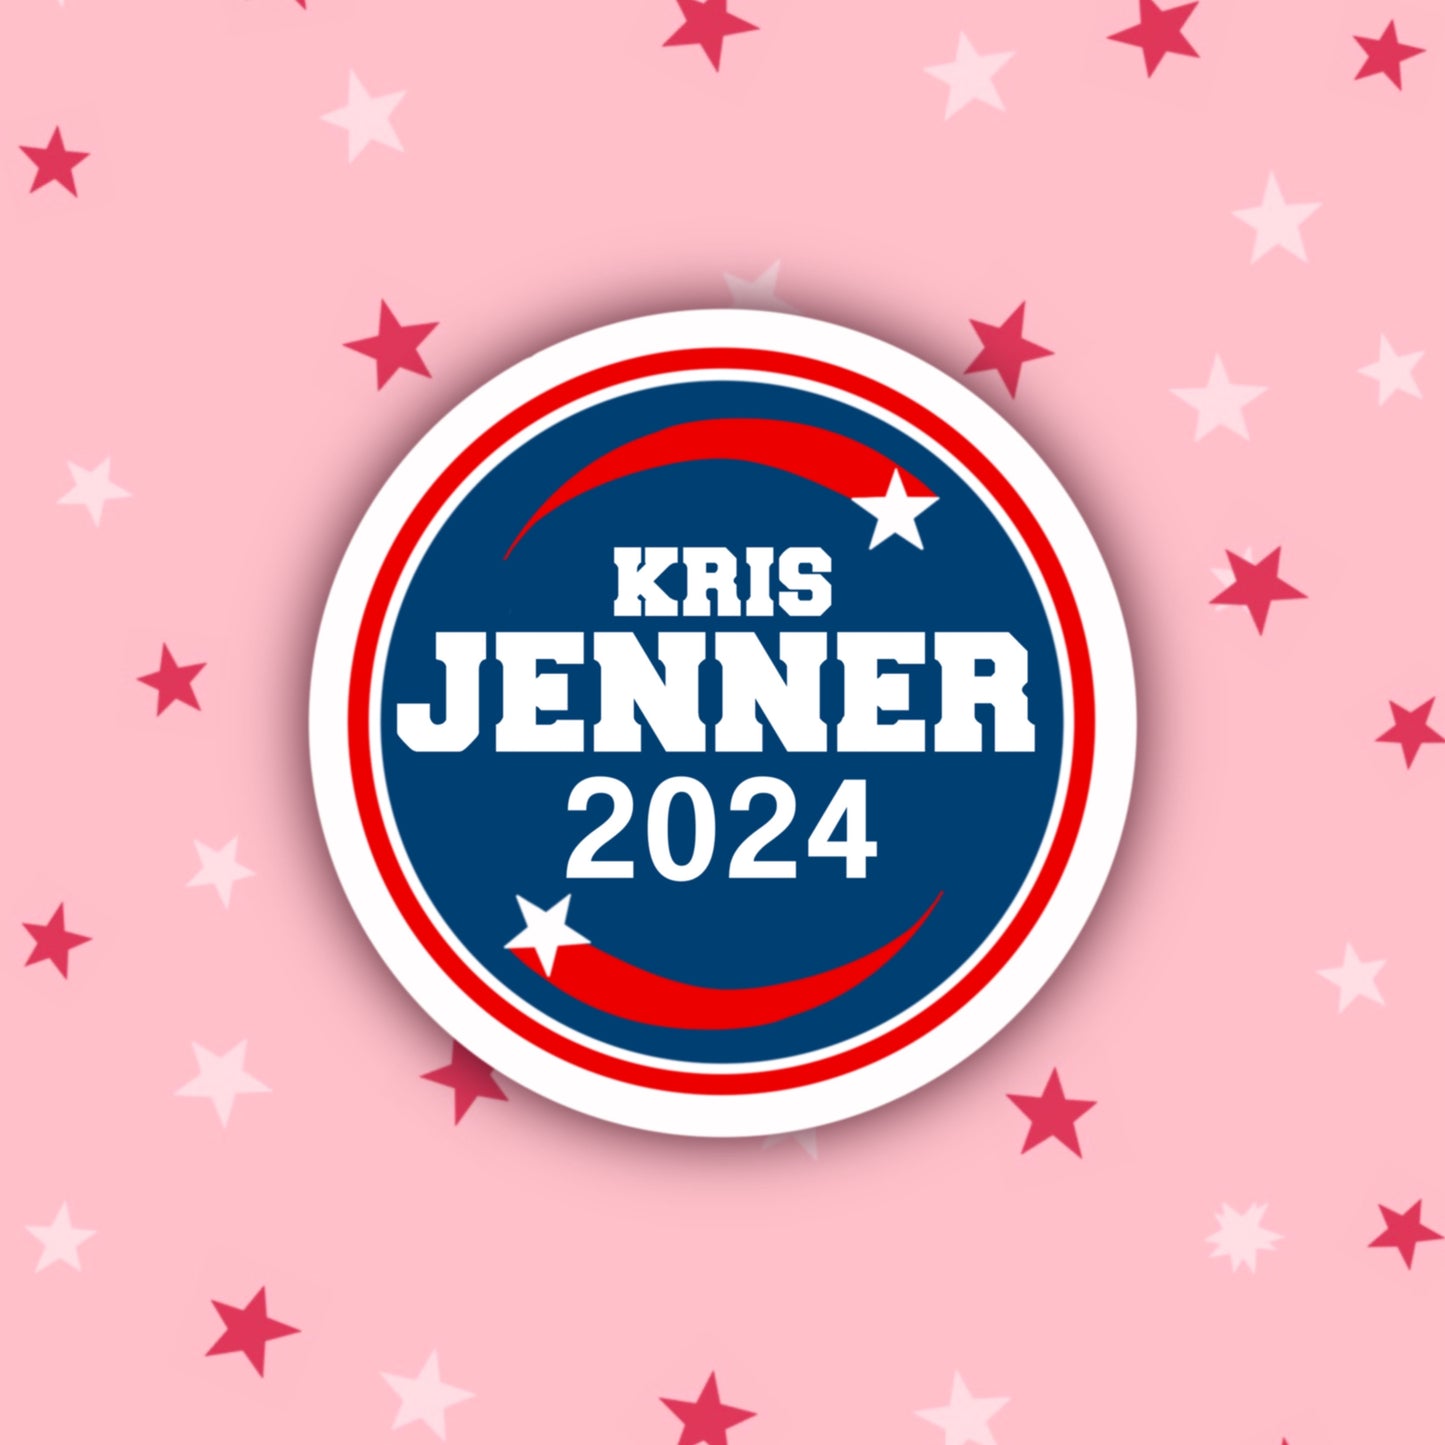 Kris Jenner 2024 | Kardashians